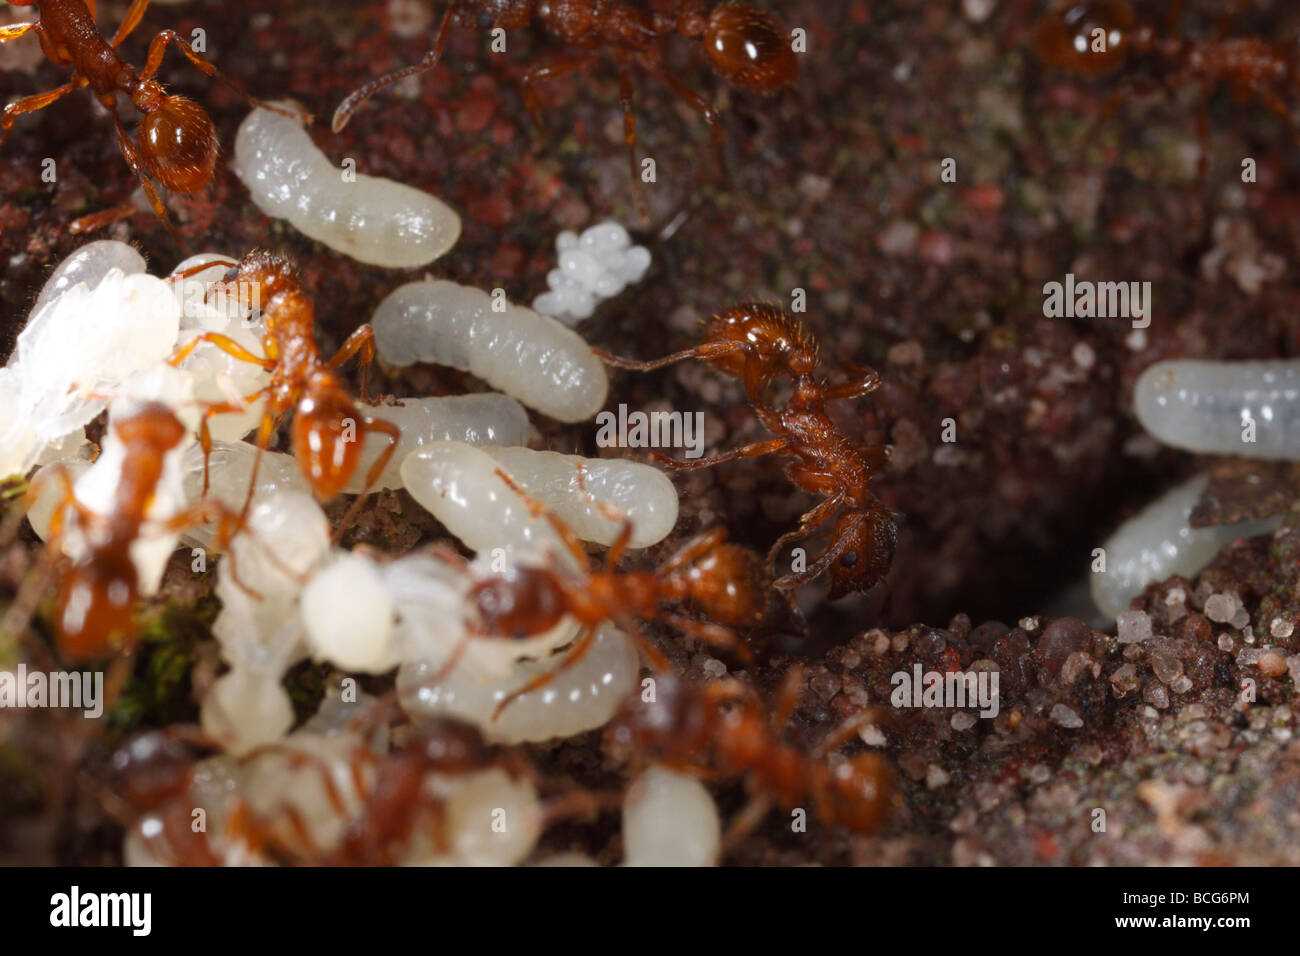 Las hormigas del género Myrmica trayendo sus larvas y pupas de metro atrás después de su nido ha sido perturbado. Foto de stock